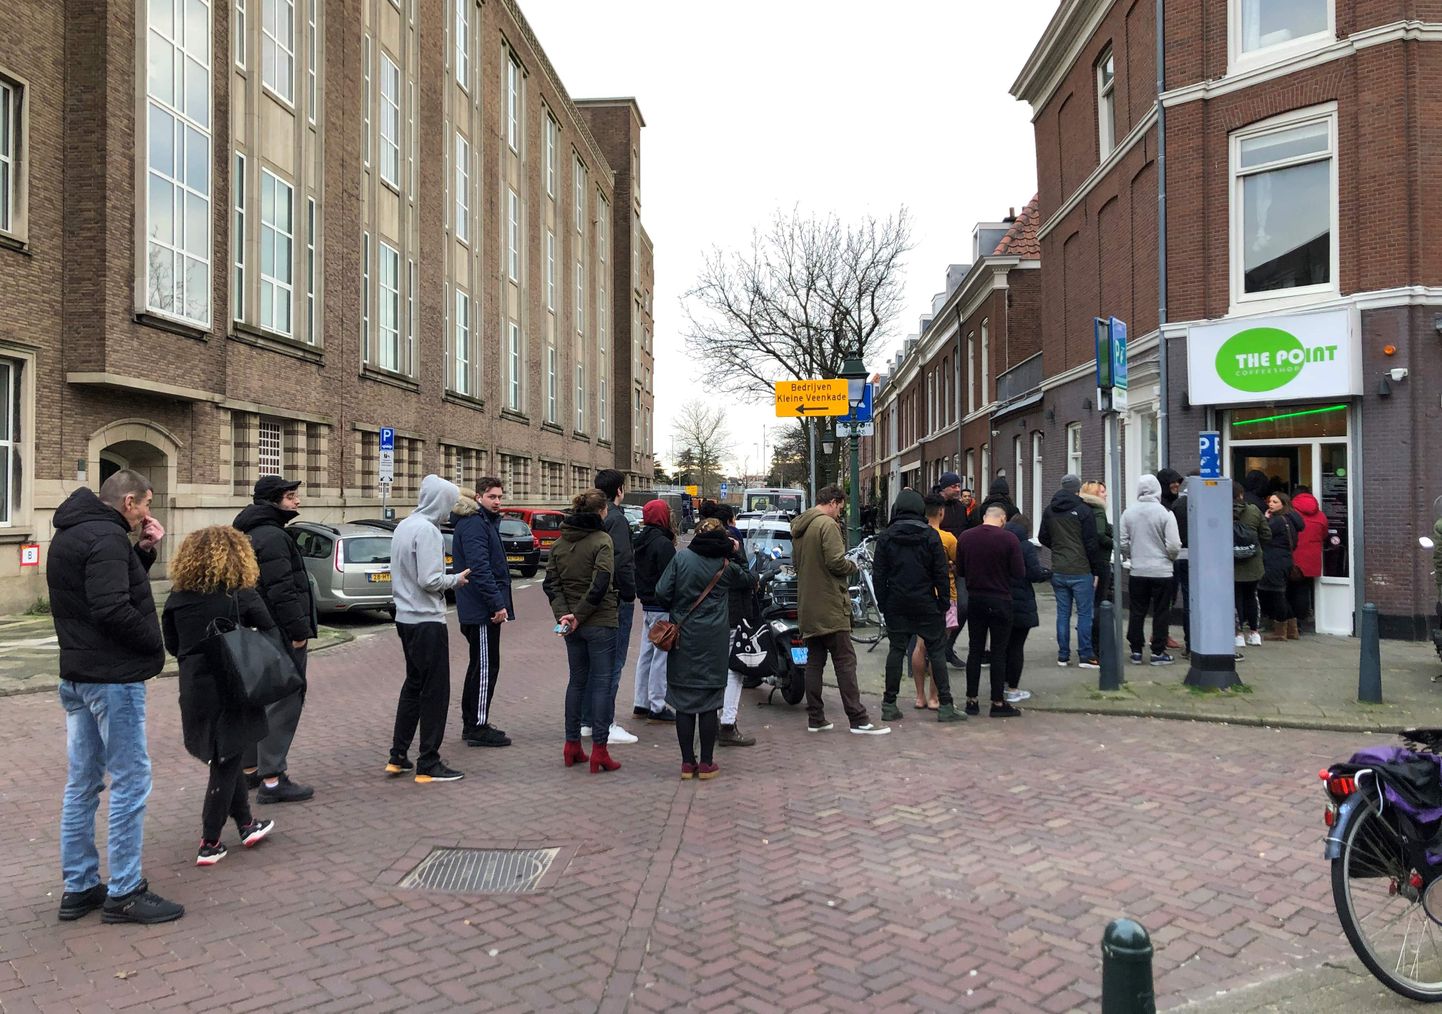 Inimesed 15. märtsil Haagis kanepikohviku järjekorras